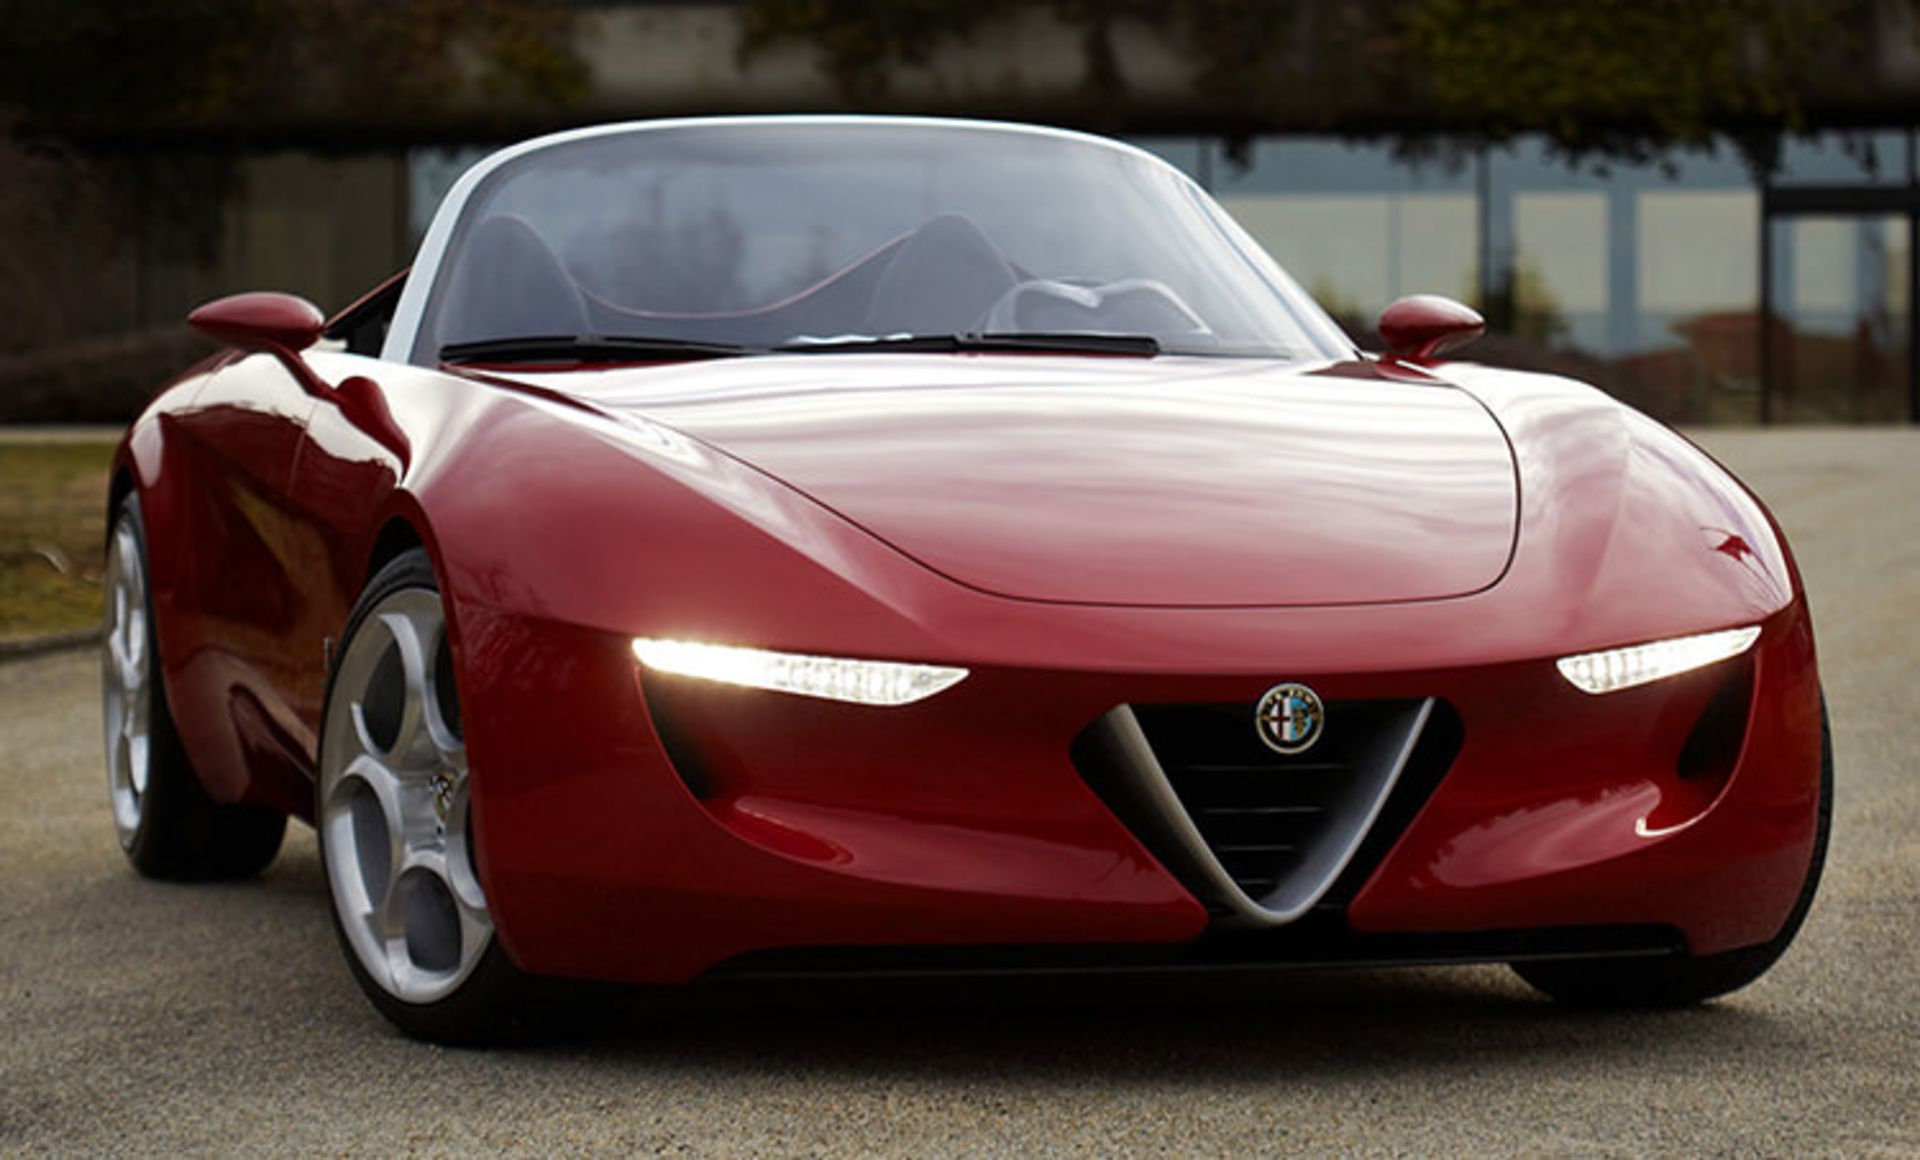 مرجع متخصصين ايران آلفارومئو / Alfa Romeo 2uettottanta